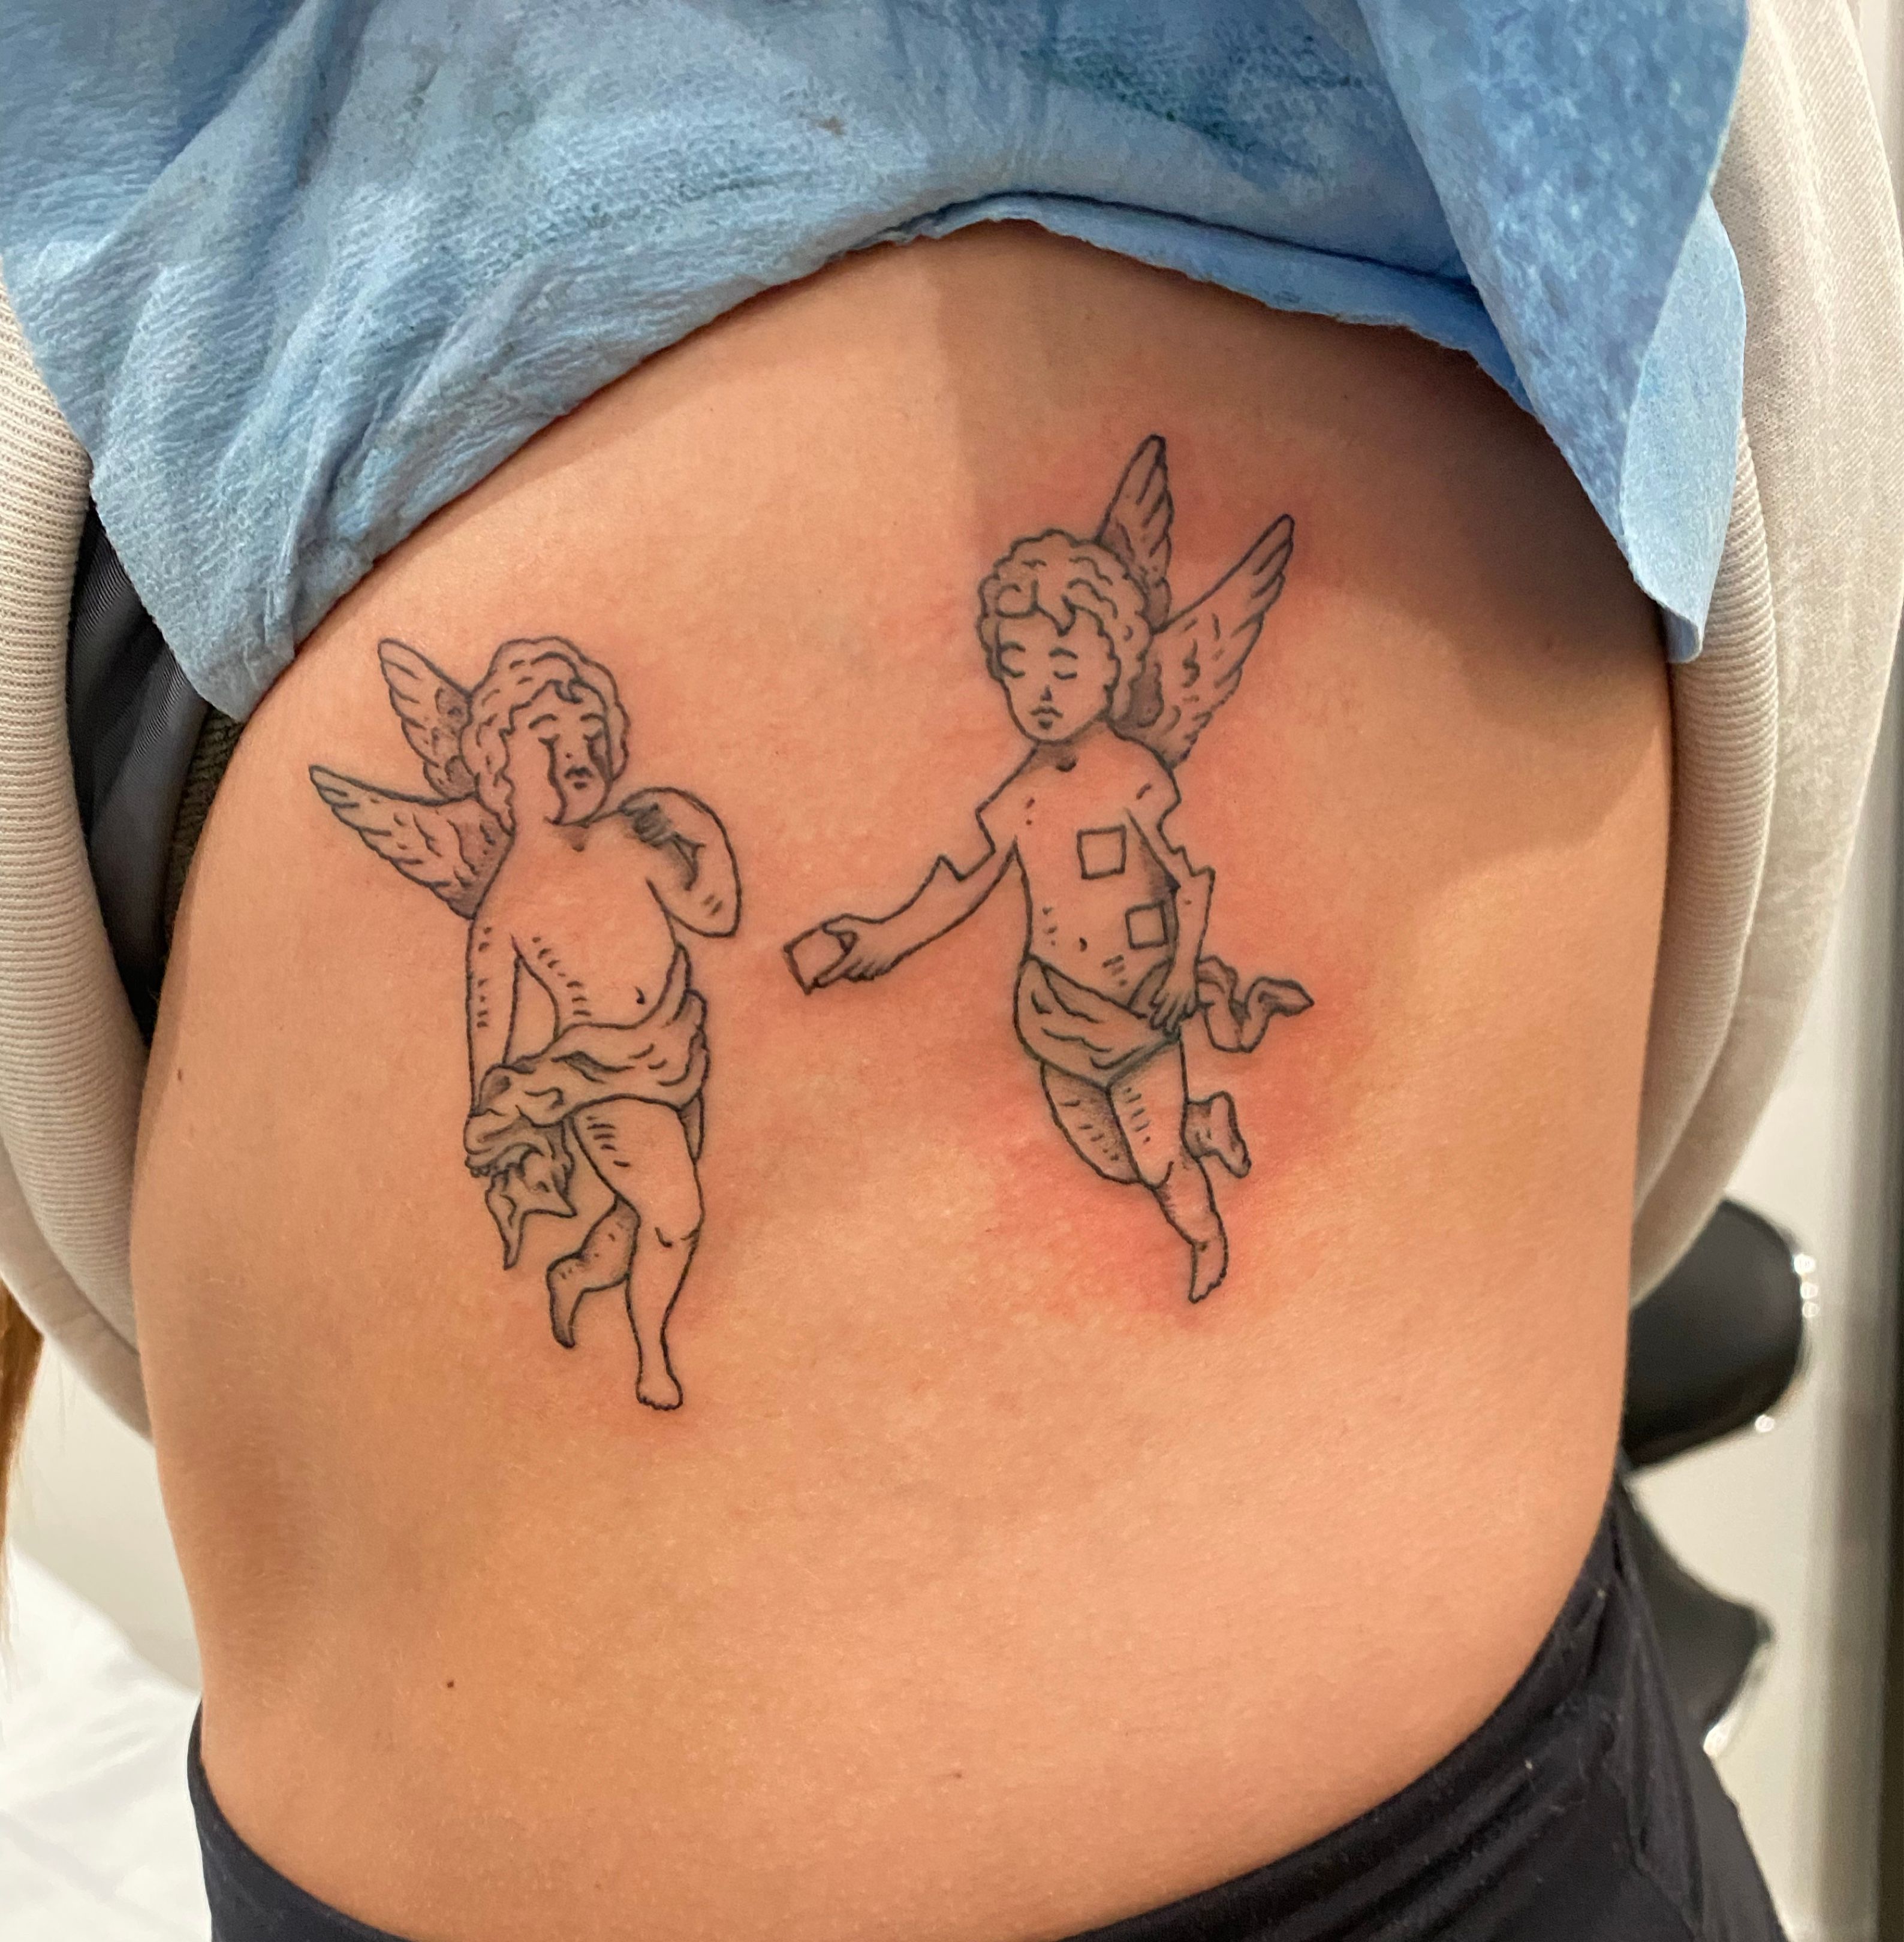 Sister tattoos! Raphael's cherubs,... - Jane the Stranger | Facebook